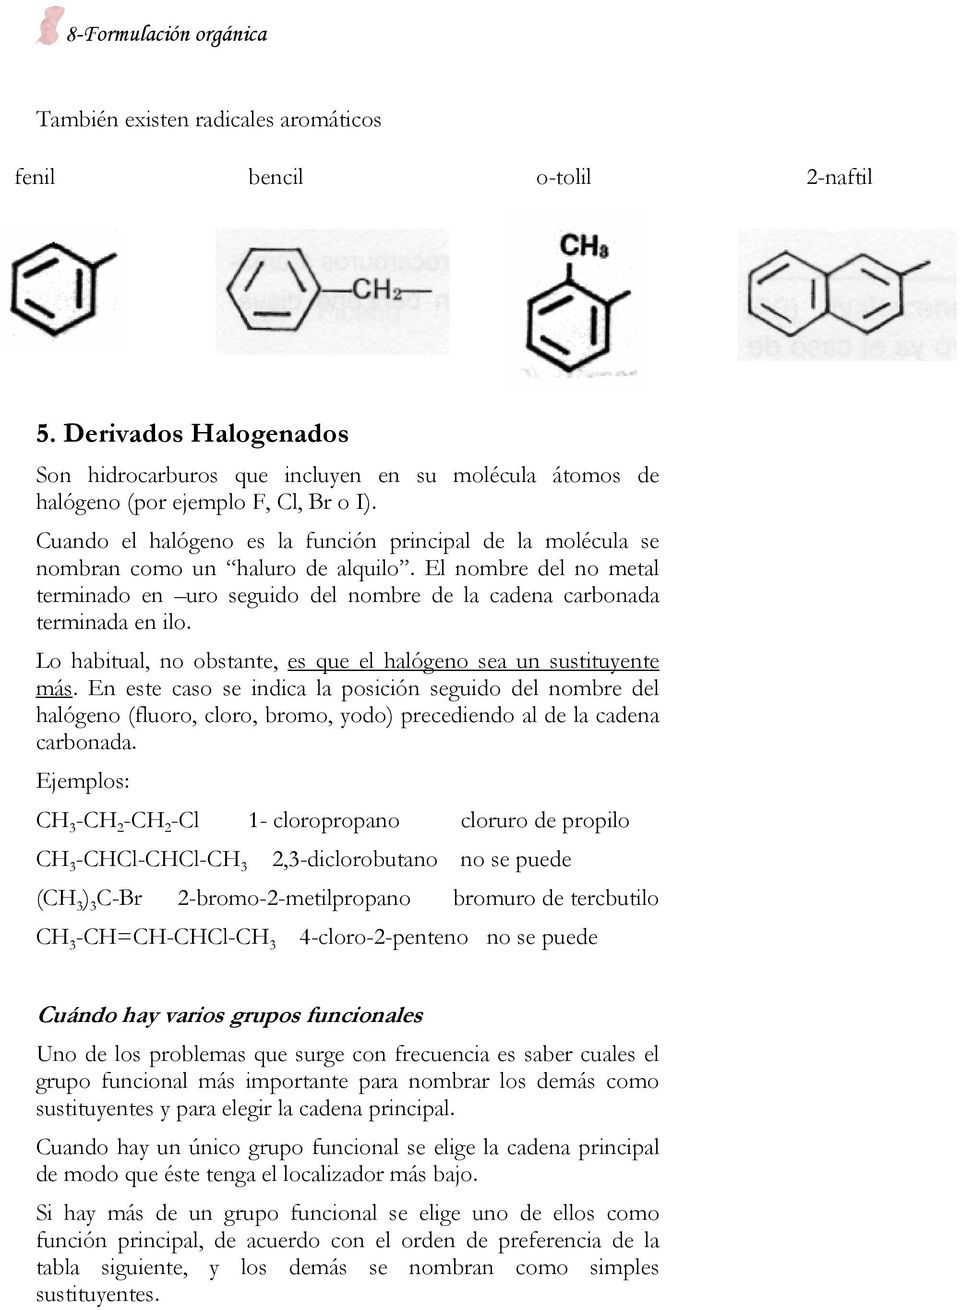 Cuando el halógeno es la función principal de la molécula se nombran como un haluro de alquilo. El nombre del no metal terminado en uro seguido del nombre de la cadena carbonada terminada en ilo.